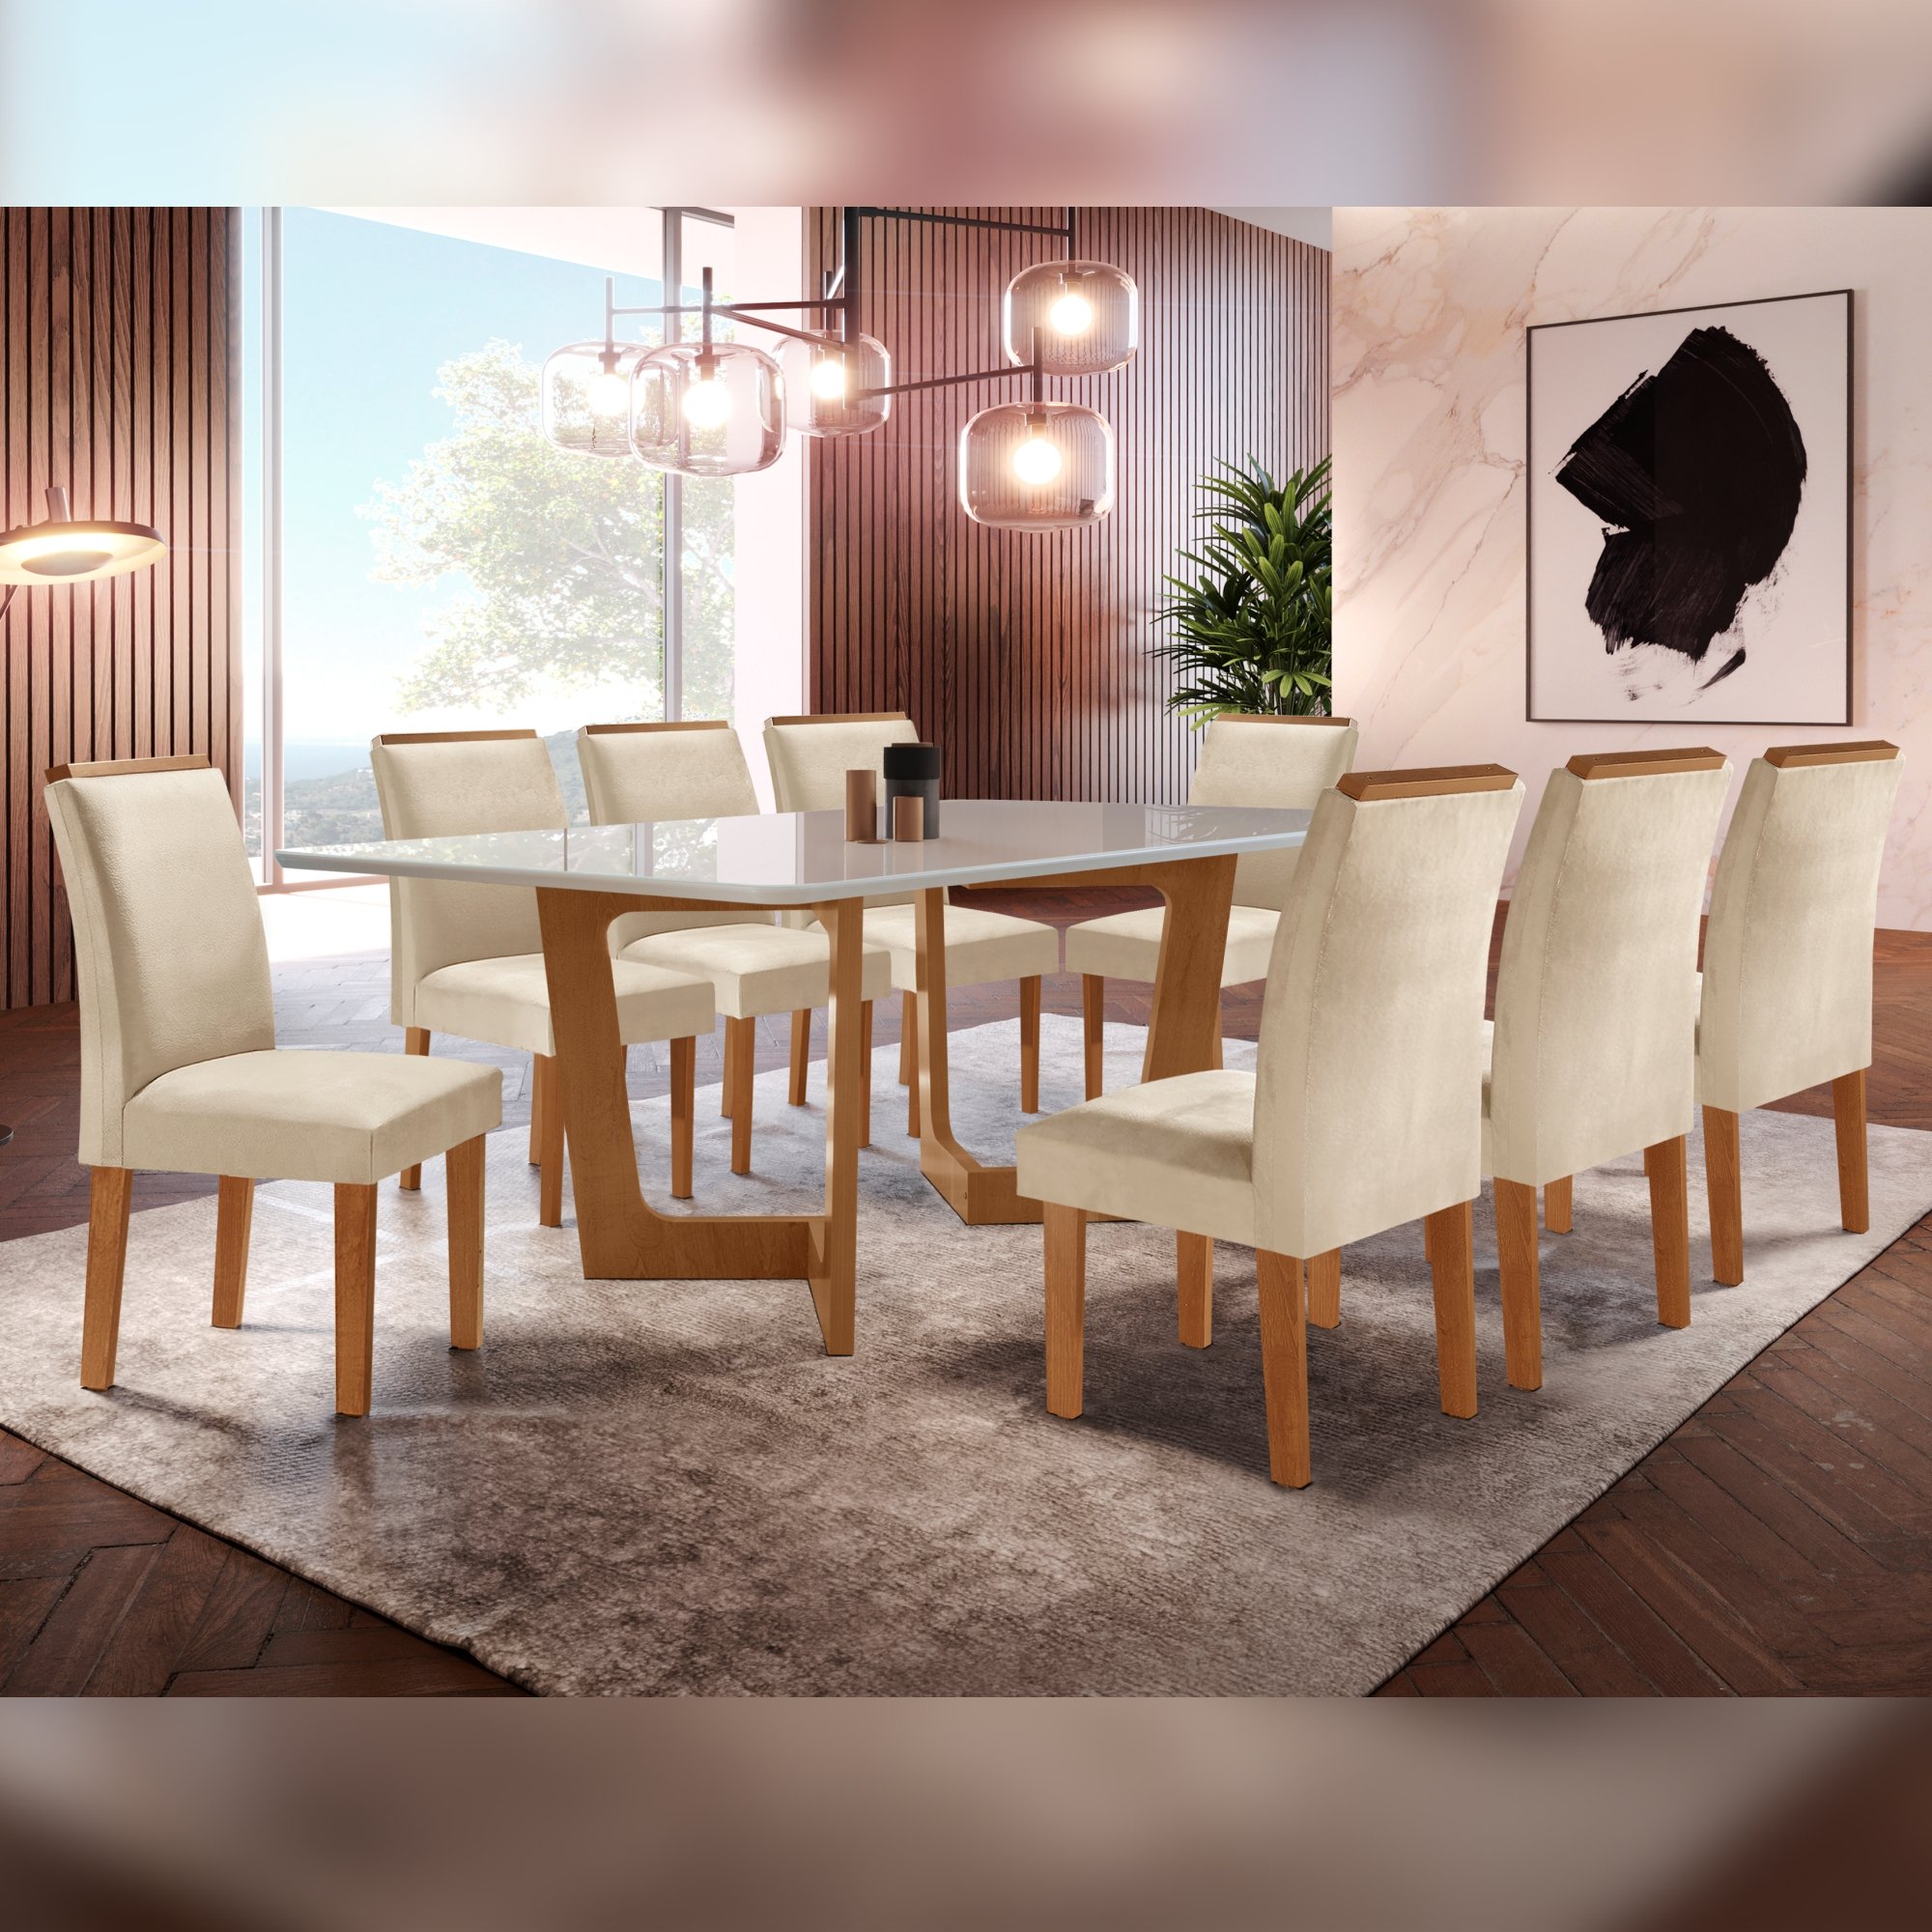 Conjunto Sala De Jantar Nápoles Tampo Vidro/MDF com 8 Cadeiras Luísa Smart Plus Cel Móveis